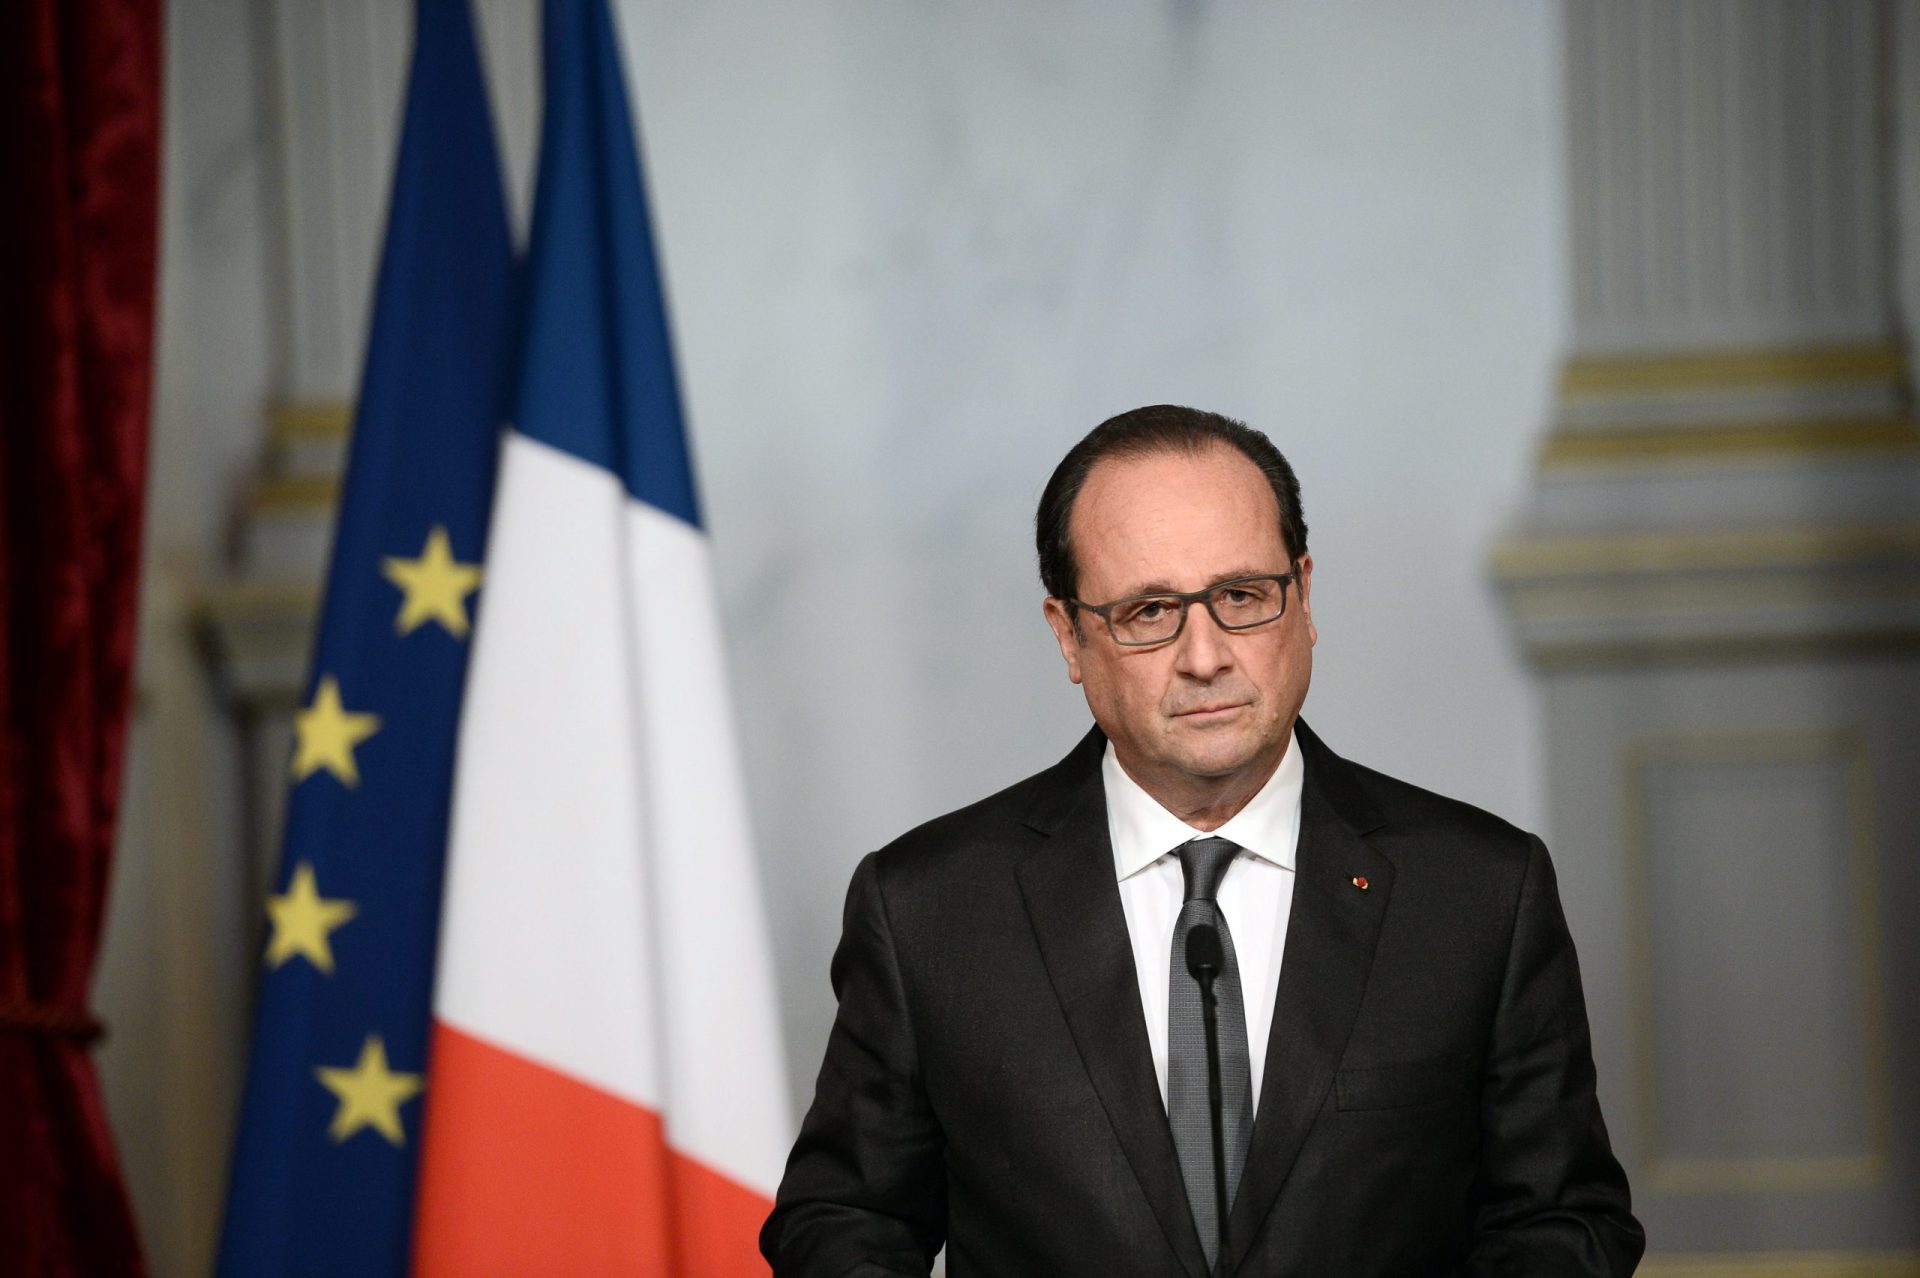 Terrorismo é a prioridade de Hollande